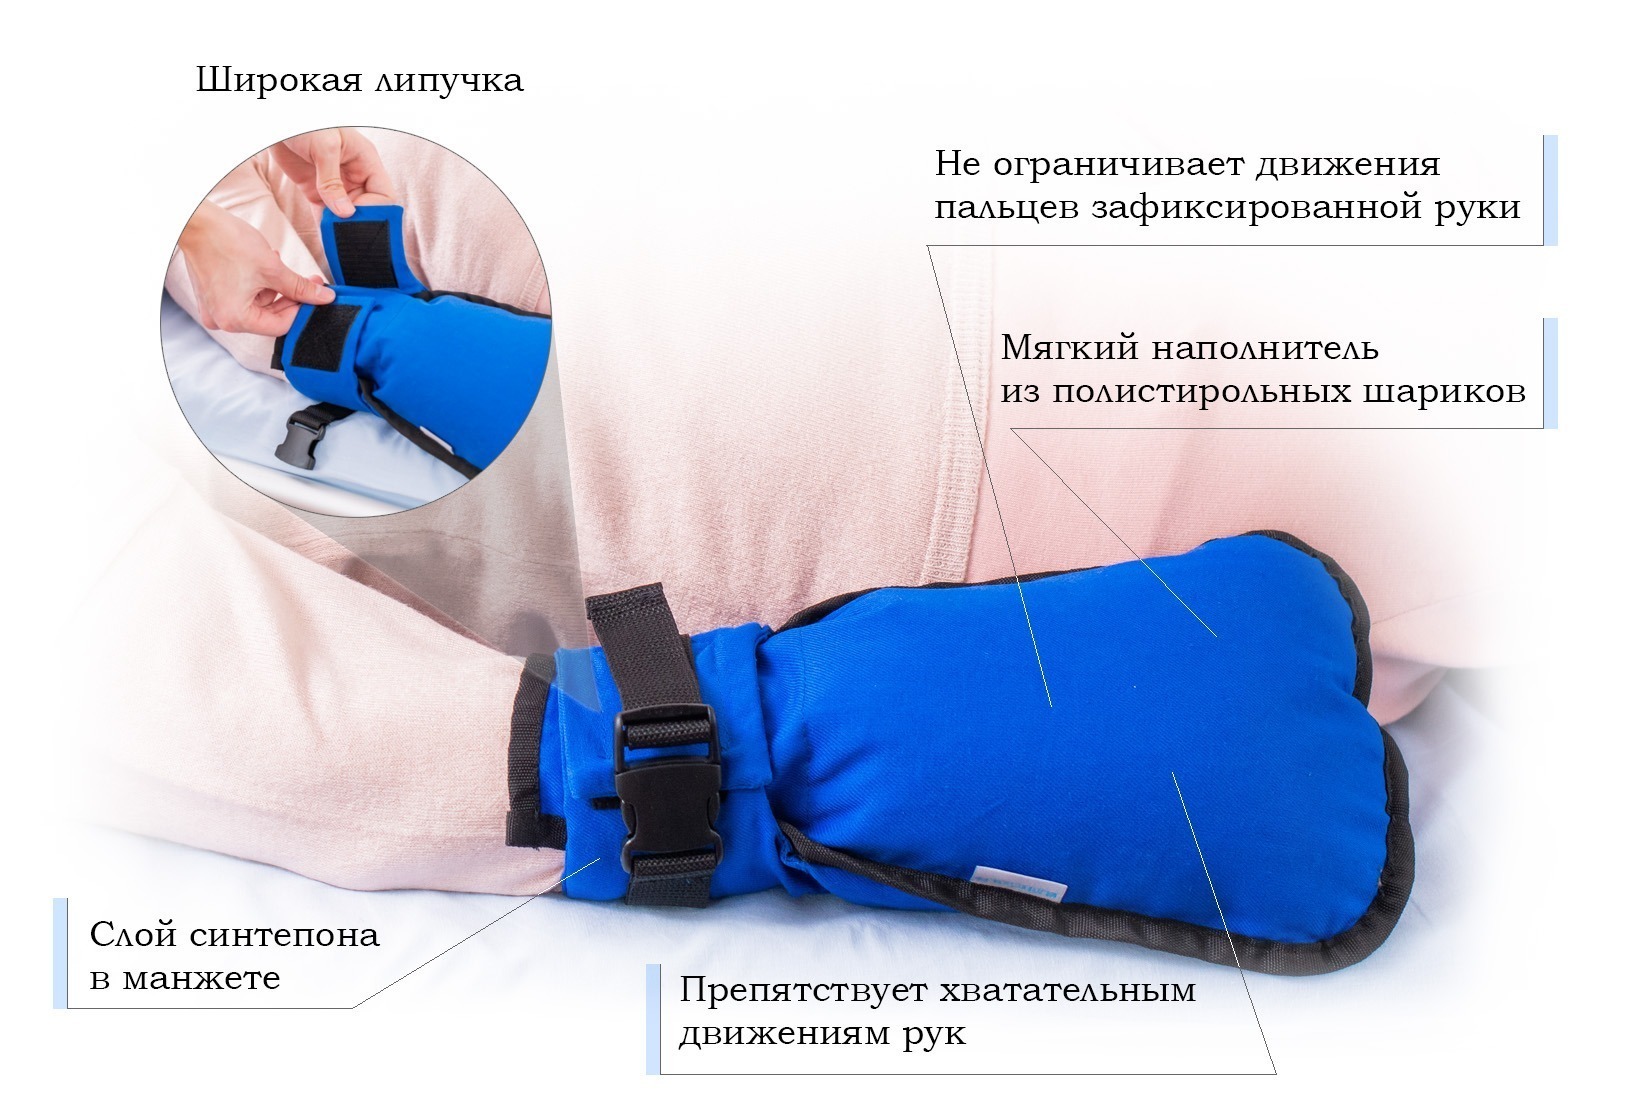 Комплект вязок для фиксации пациентов с психомоторным возбуждением к кровати или носилкам